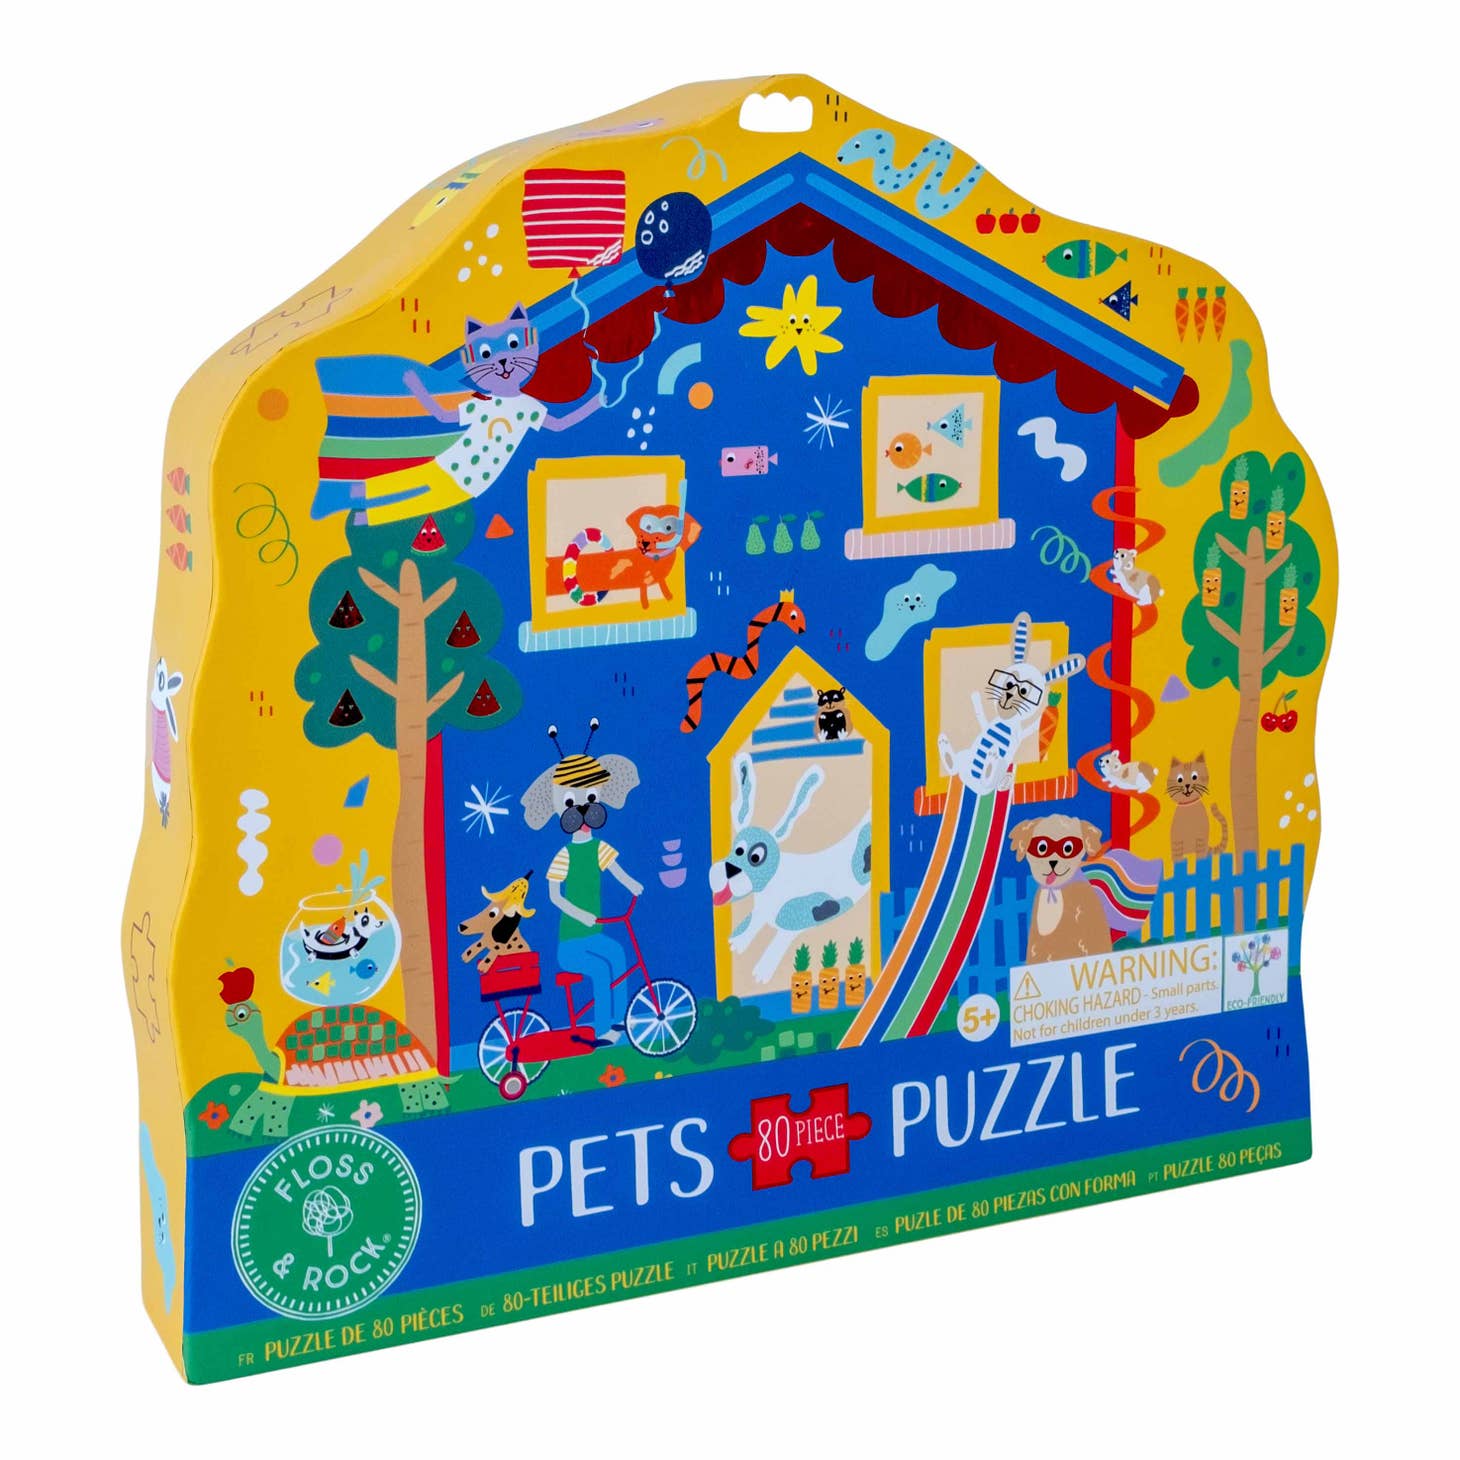 Pets 80pc "Pet House" Shaped Jigsaw with Shaped Box